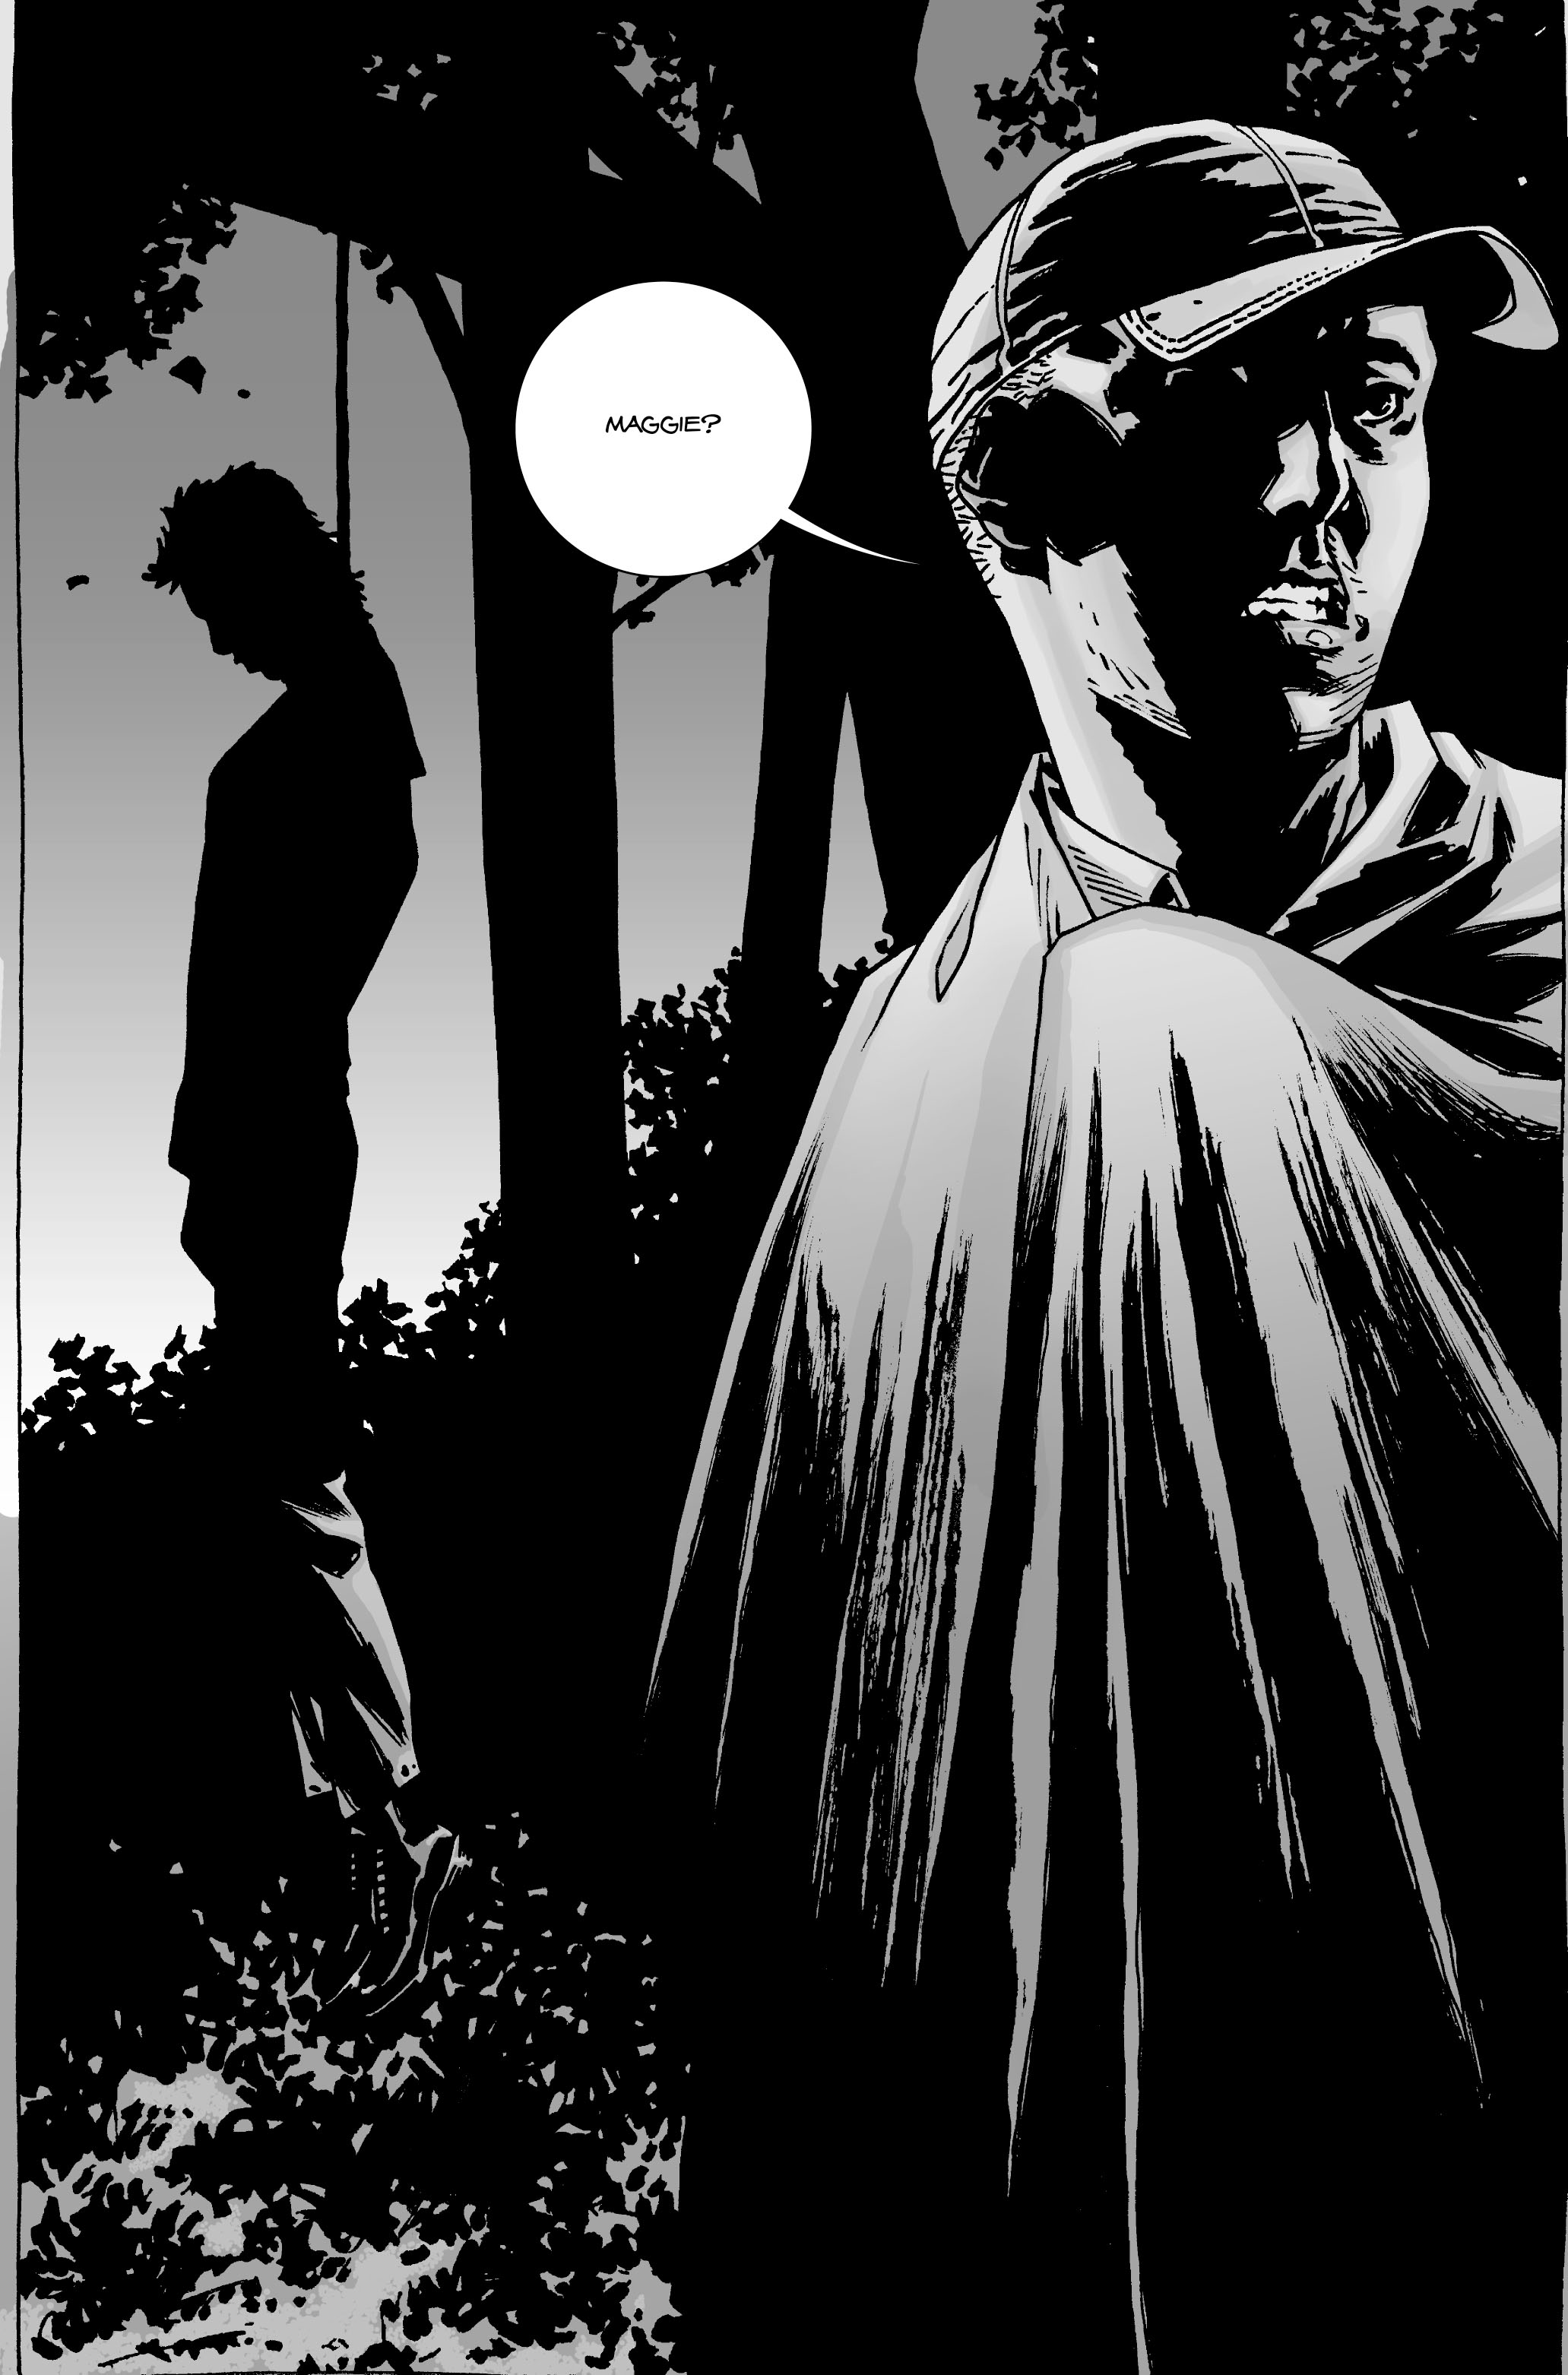 Read online The Walking Dead comic -  Issue #55 - 23